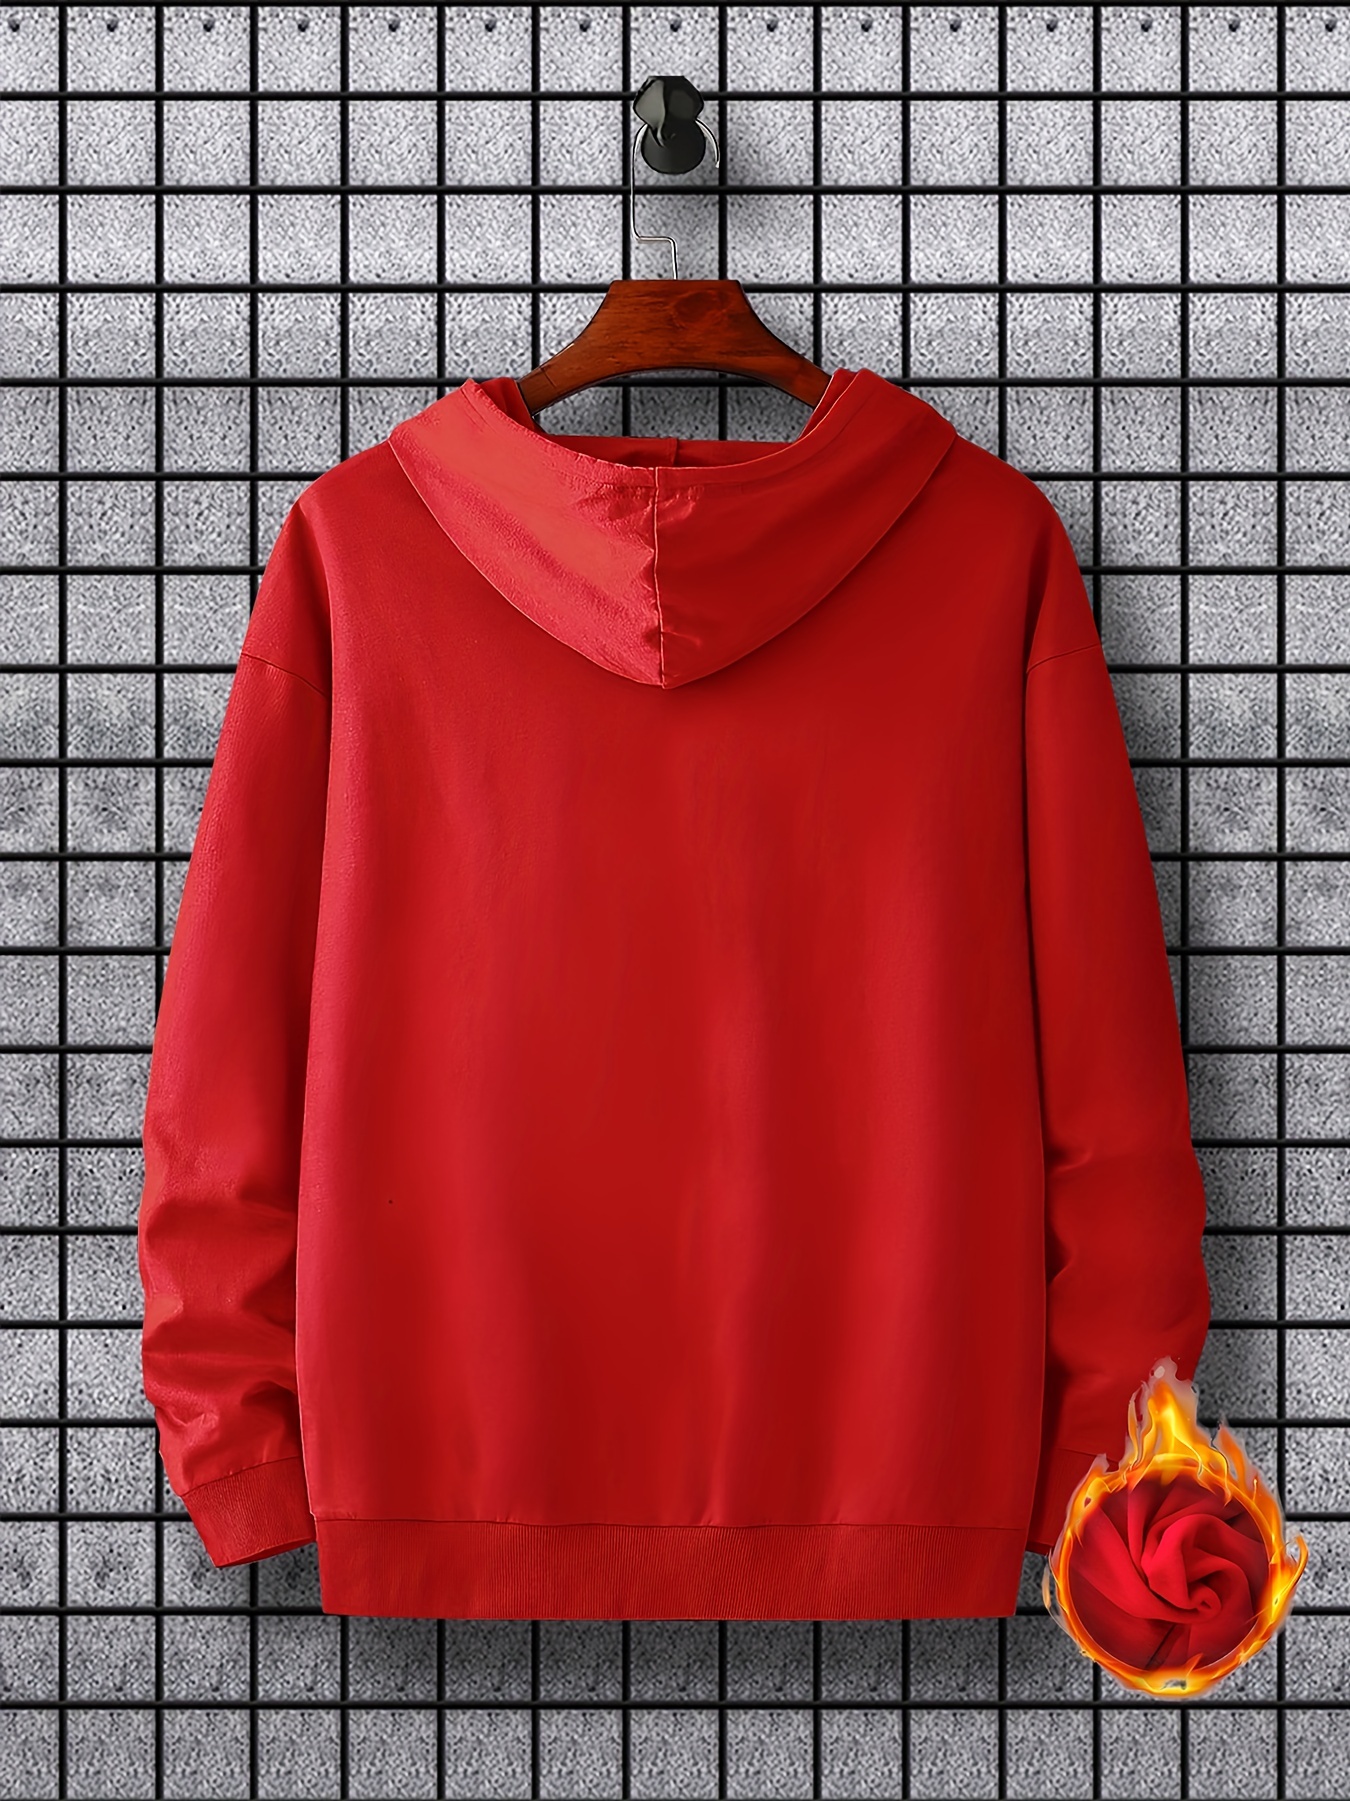 bus pattern warm hoodie with kangaroo pocket mens casual pullover hooded sweatshirt details 26